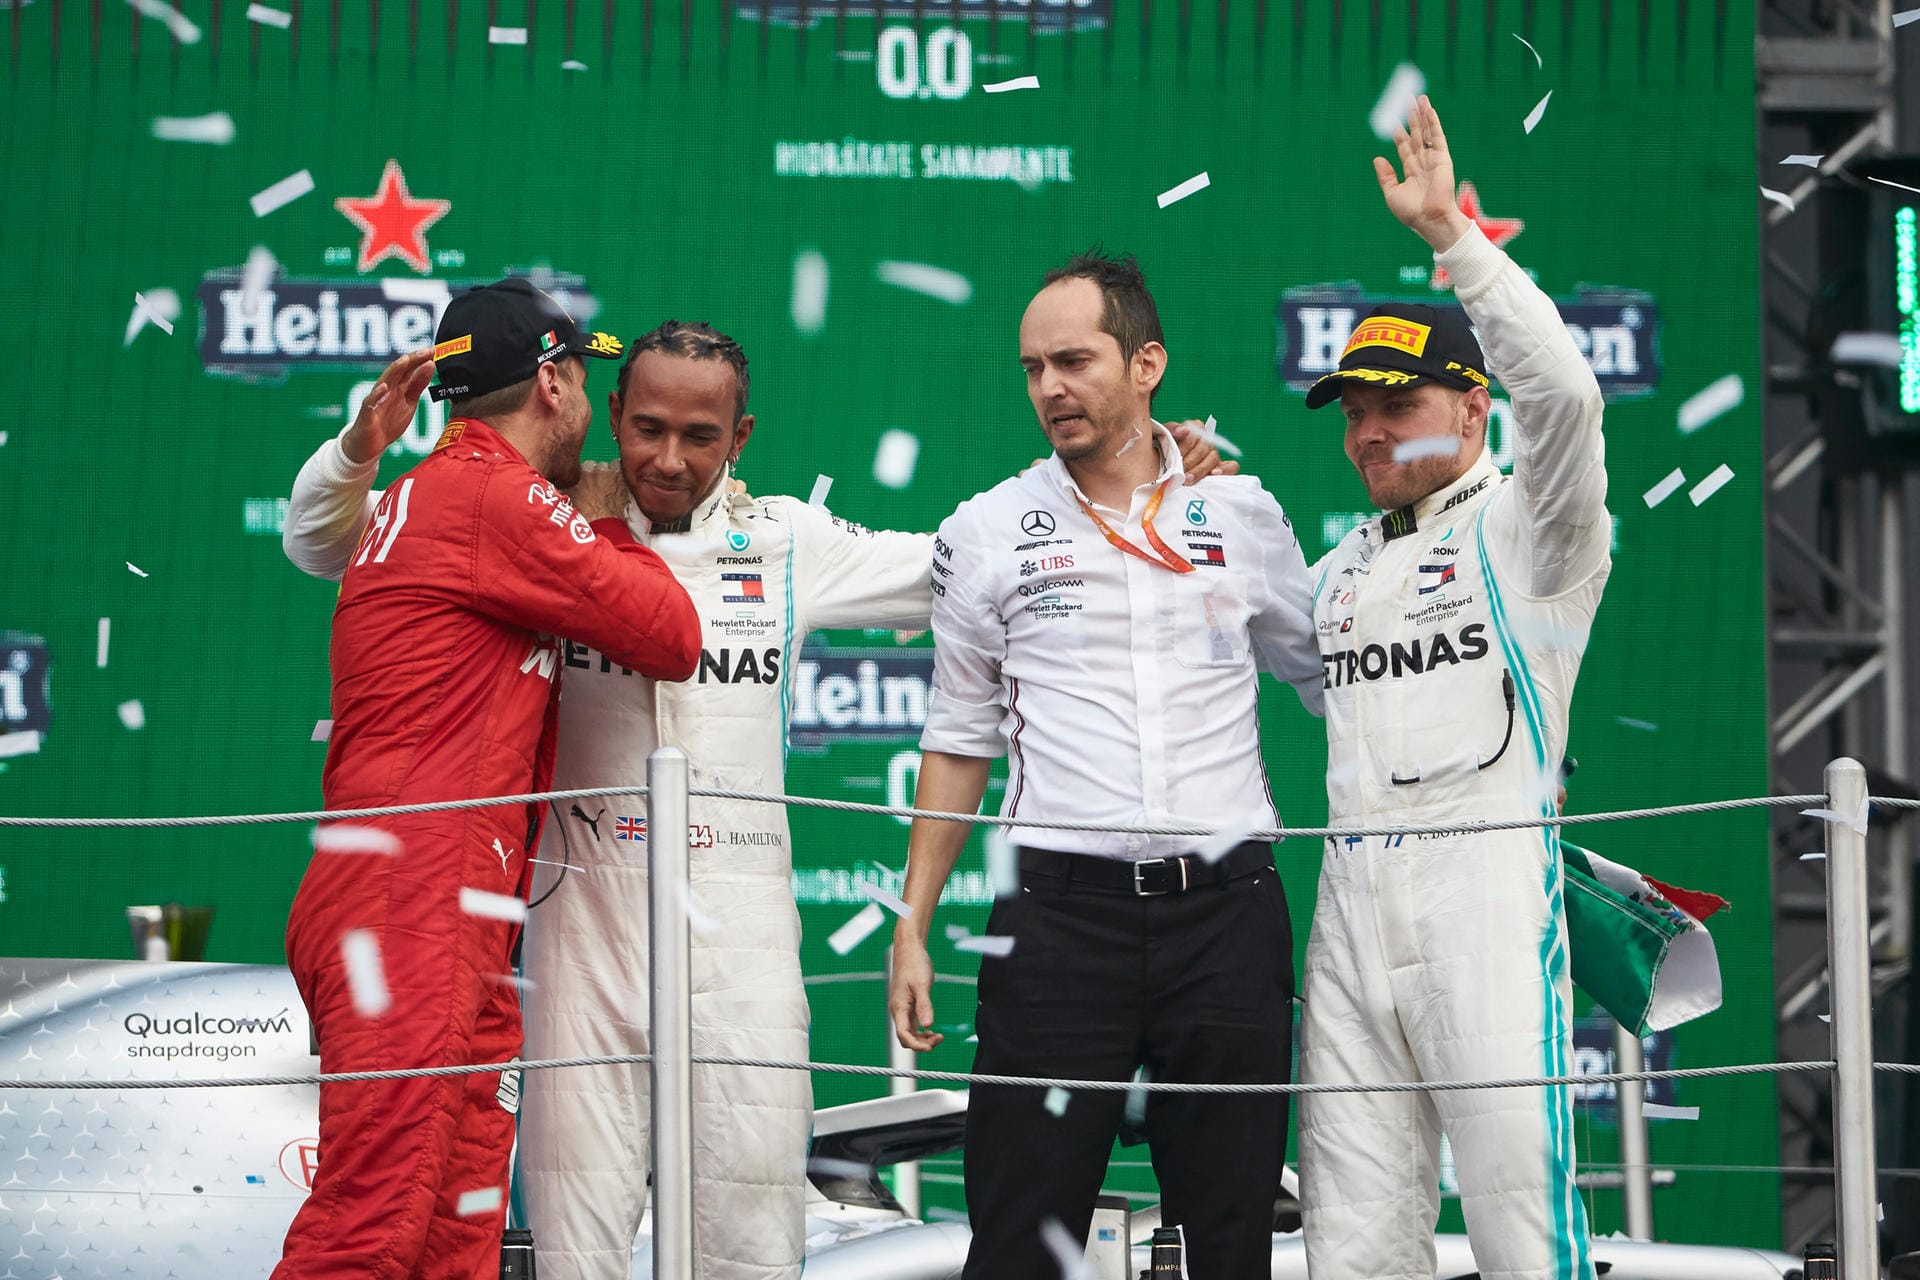 Blick (Schweiz): "100. Sieg für Mercedes – Hamilton noch nicht Weltmeister. Tosende Fans bejubeln Lewis Hamilton als großen Sieger des GP Mexiko. Aber Valtteri Bottas vertagt die Titel-Entscheidung."